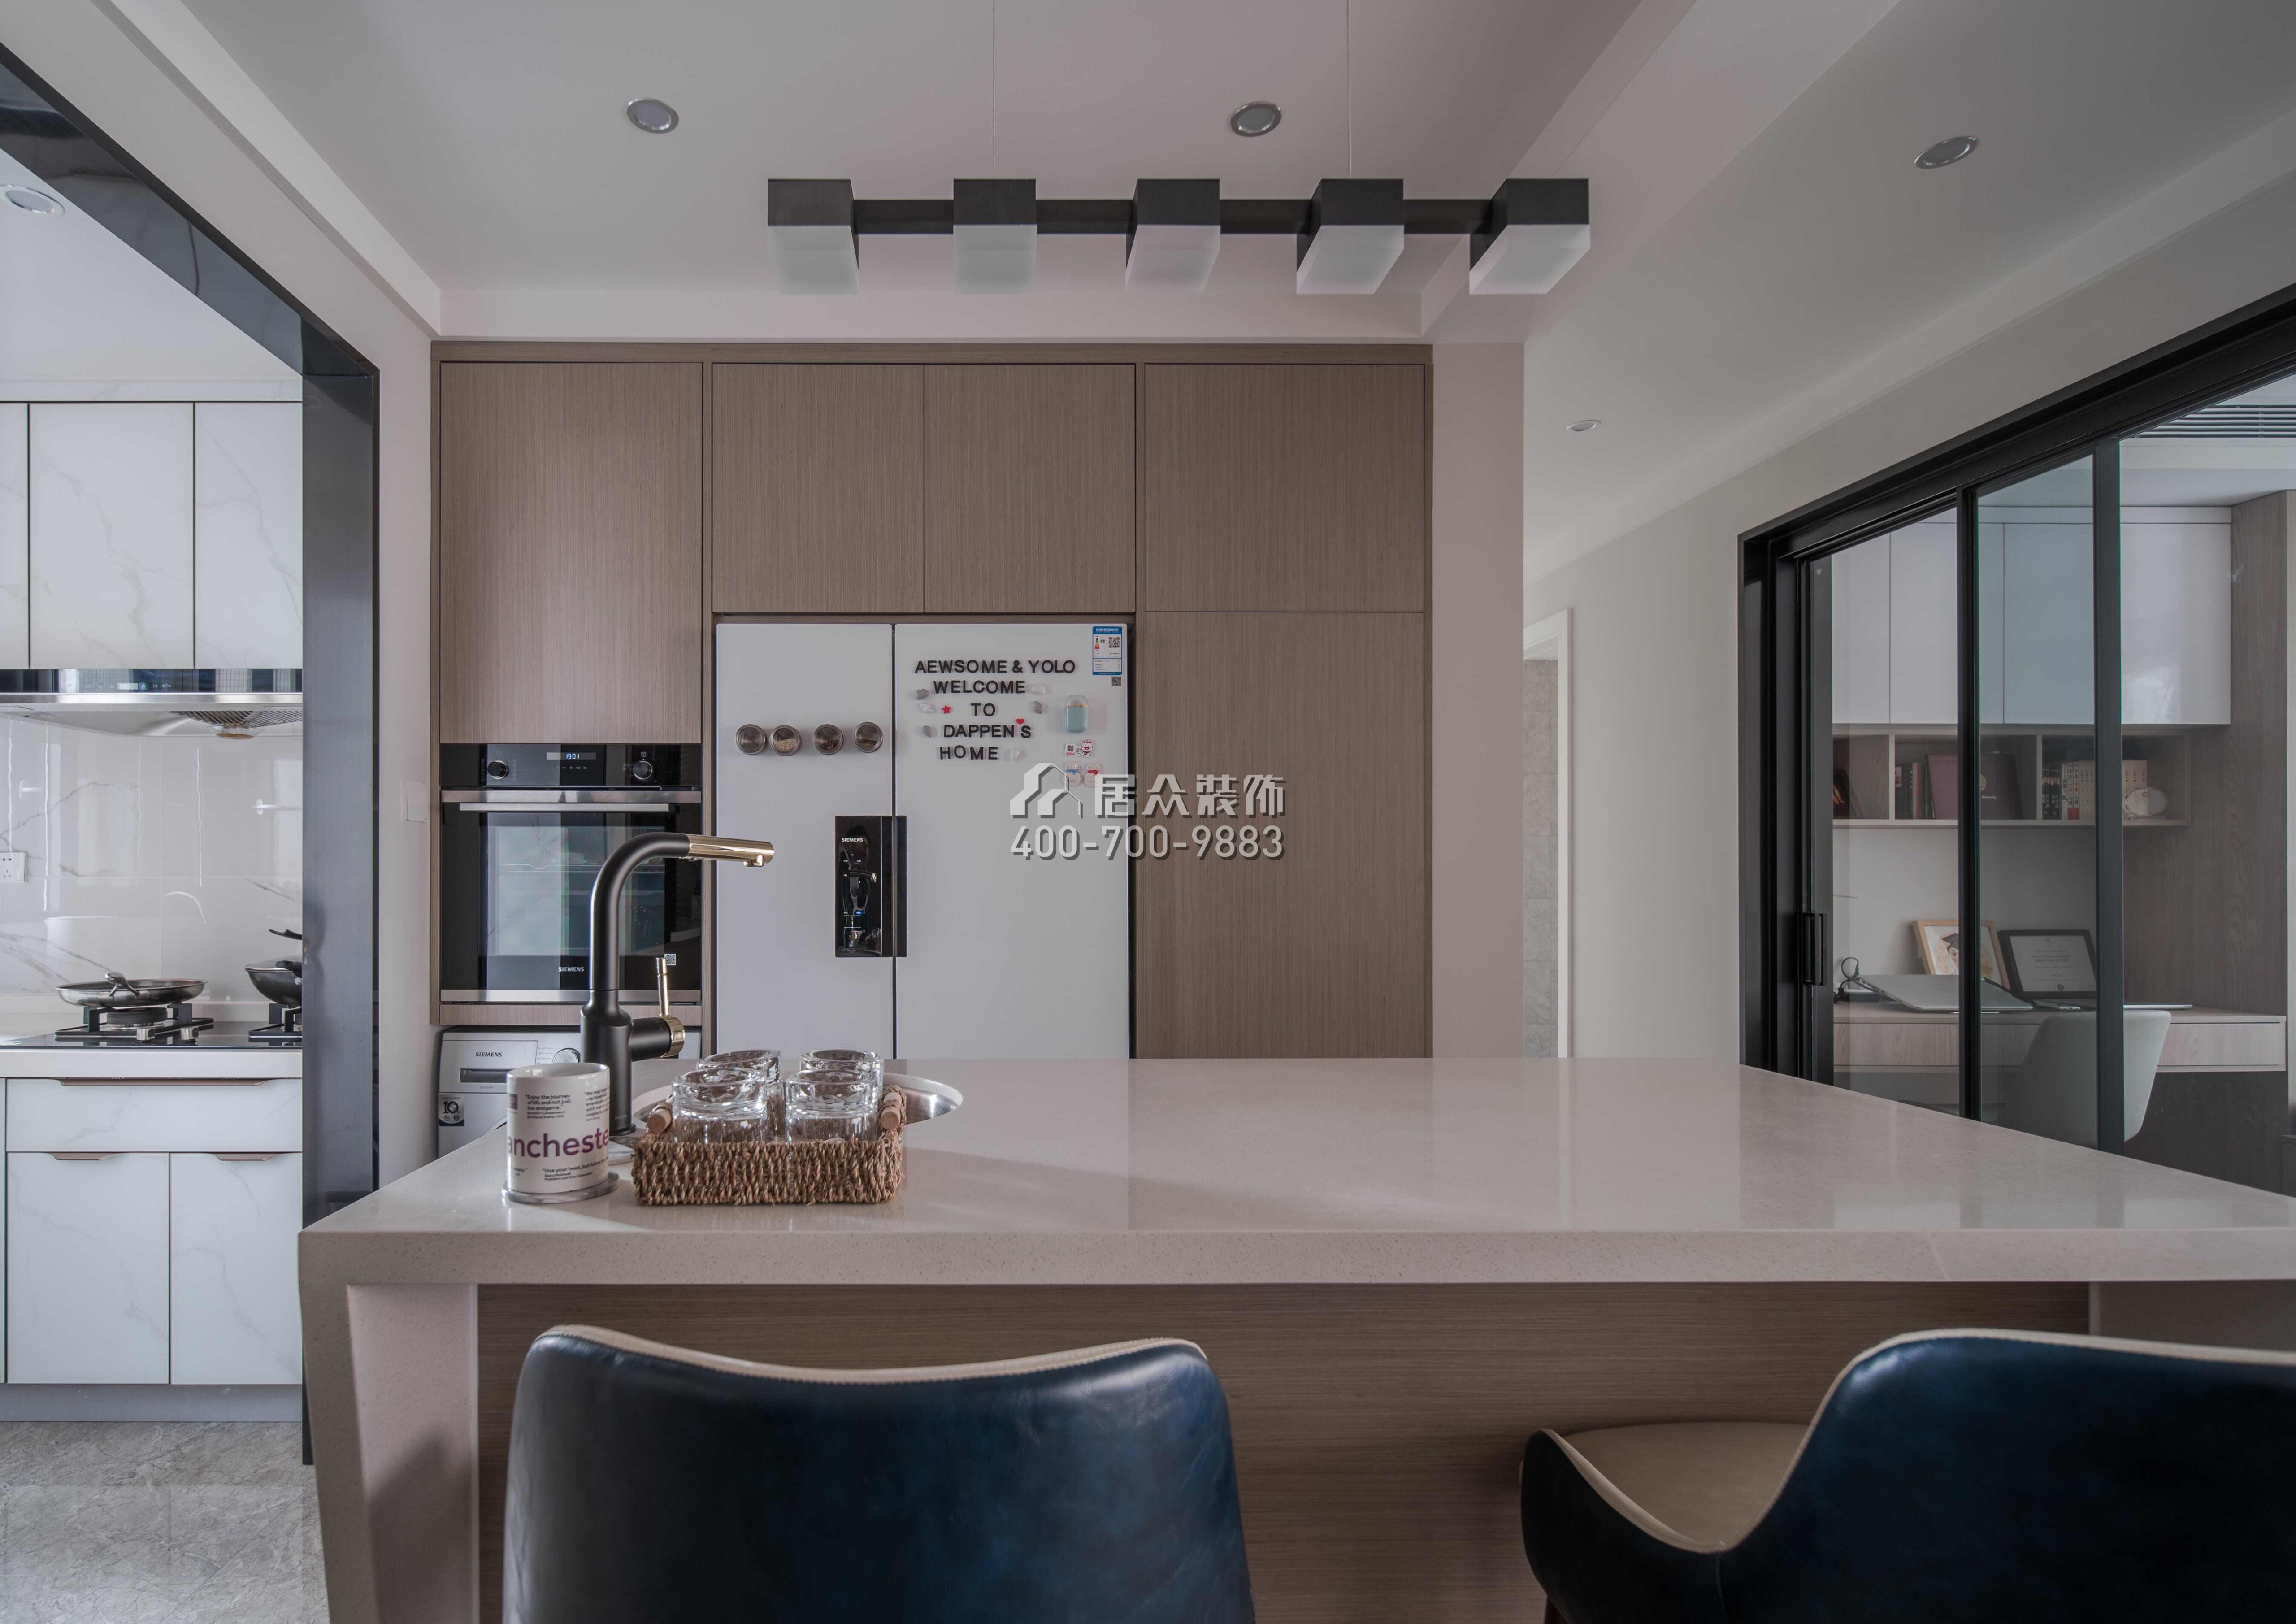 银湖蓝山润园二期110平方米现代简约风格平层户型厨房装修效果图